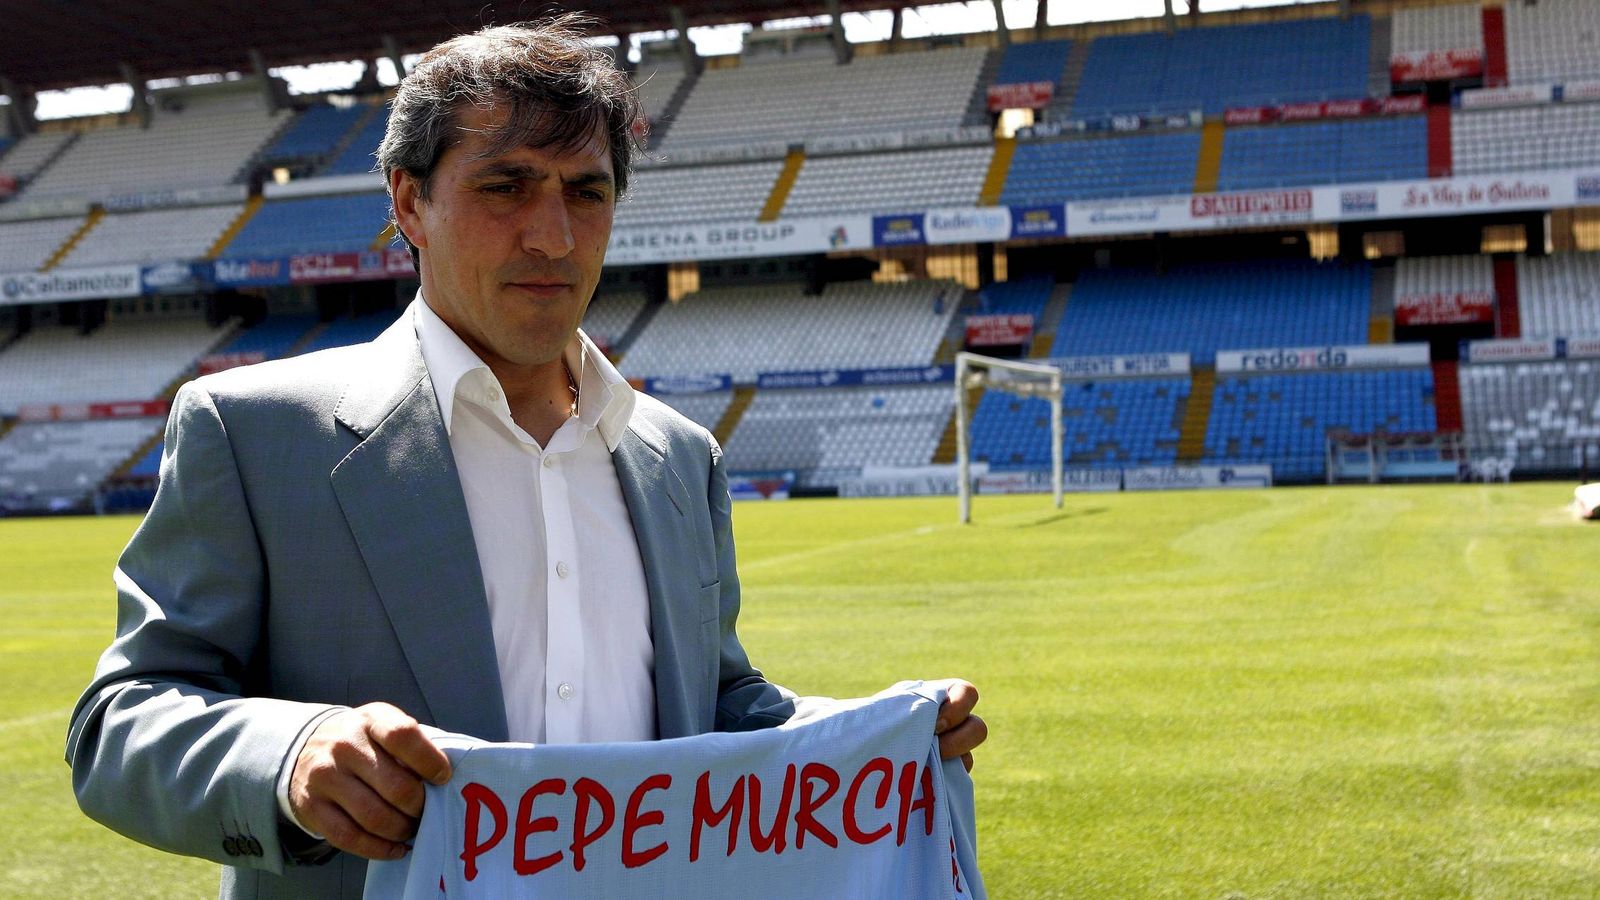 Foto: Pepe Murcia, en su etapa en el Celta.